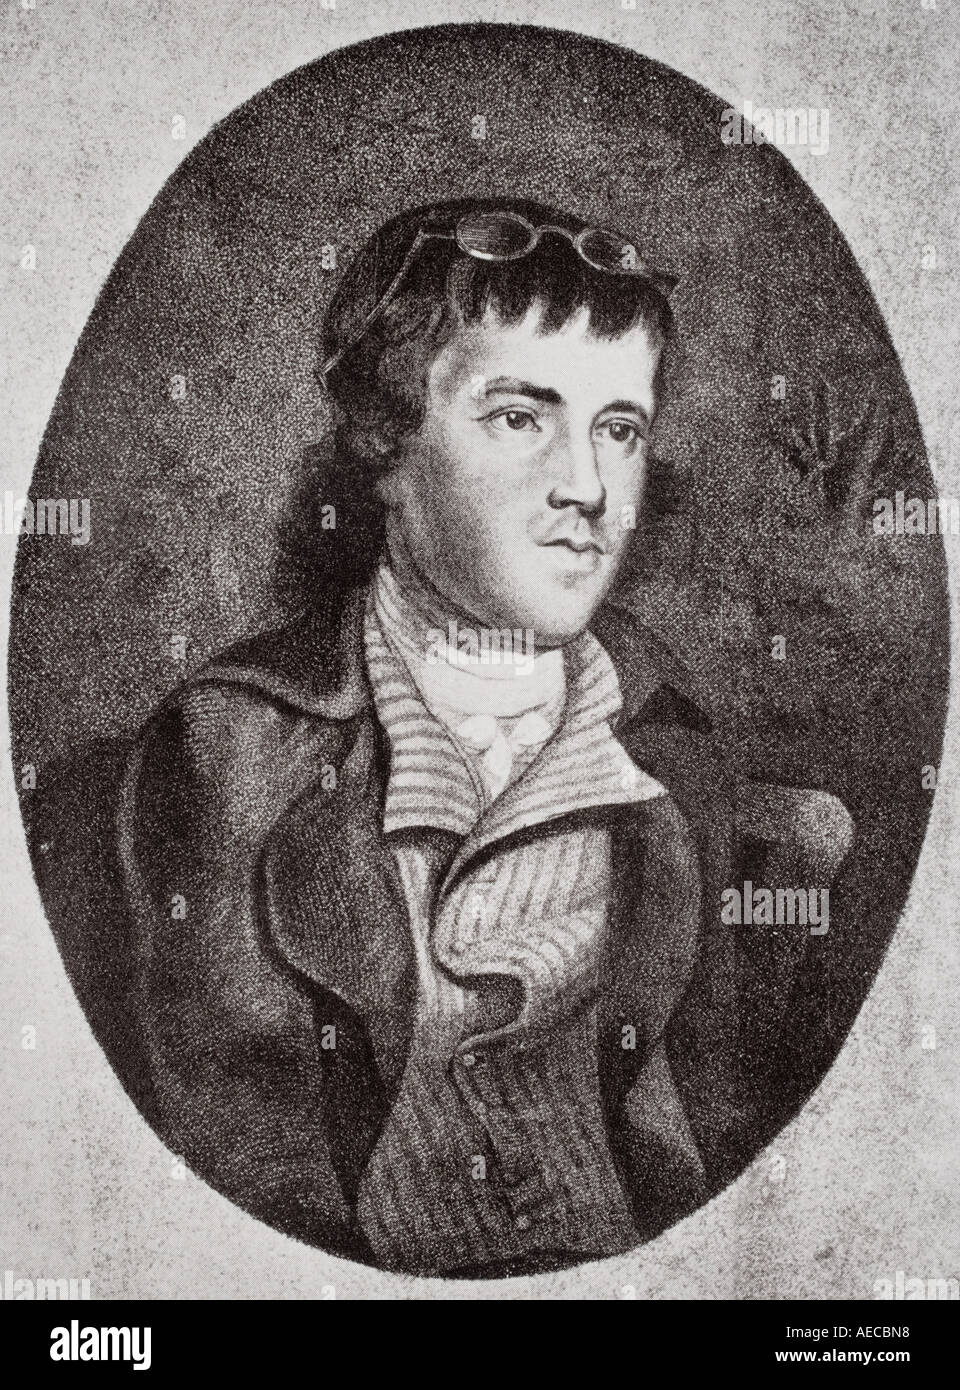 George Dyer, 1755 - 1841, visto qui di età pari a 40 anni. Pamphleteer politico inglese, poeta, studioso, editore, classicista e scrittore. Foto Stock